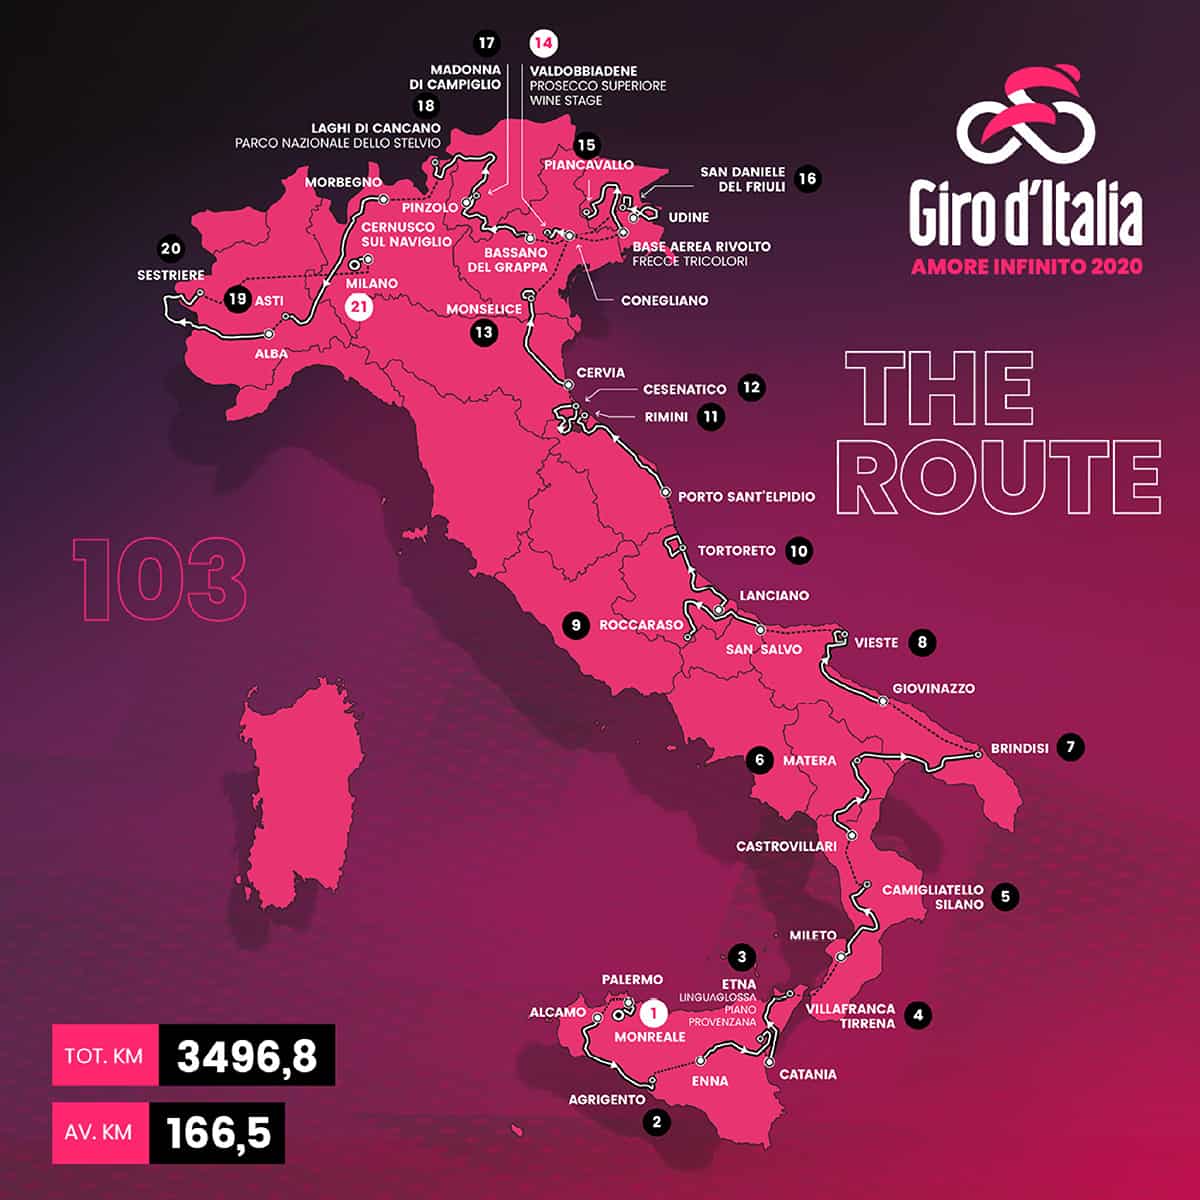 Zampediverse-Giro d’Italia 2020